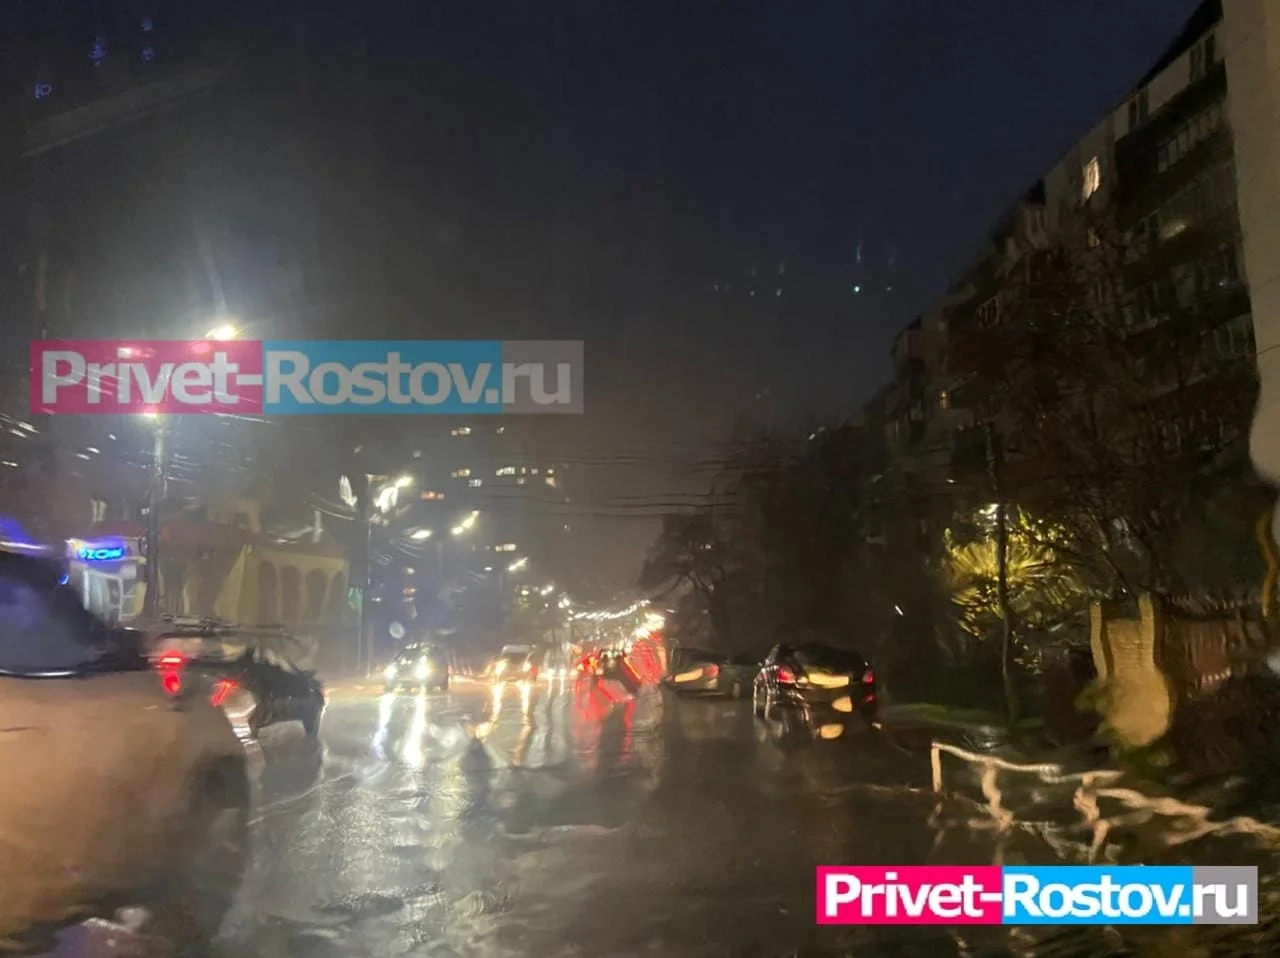 Непогода и дожди на выходных с 17 и по 18 июня обрушатся на Ростов и Ростовскую область